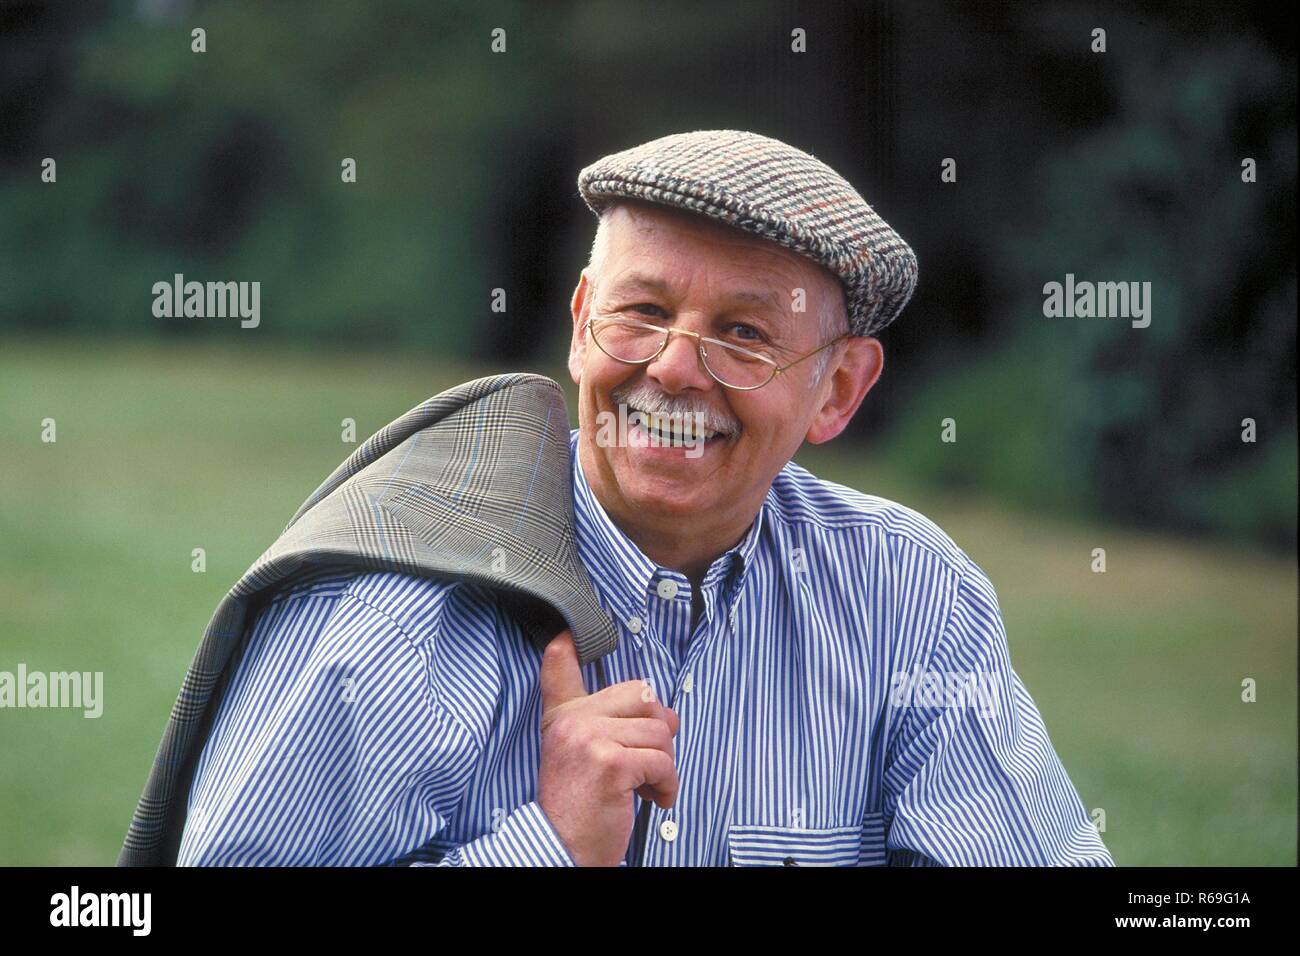 Ritratto, all'aperto, laechelnder Senior mit Schnauzbart, ca 75 Jahre alt, bekleidet mit blau-weiss gestreiftem Hemd, Schiebermuetze und Brille Foto Stock